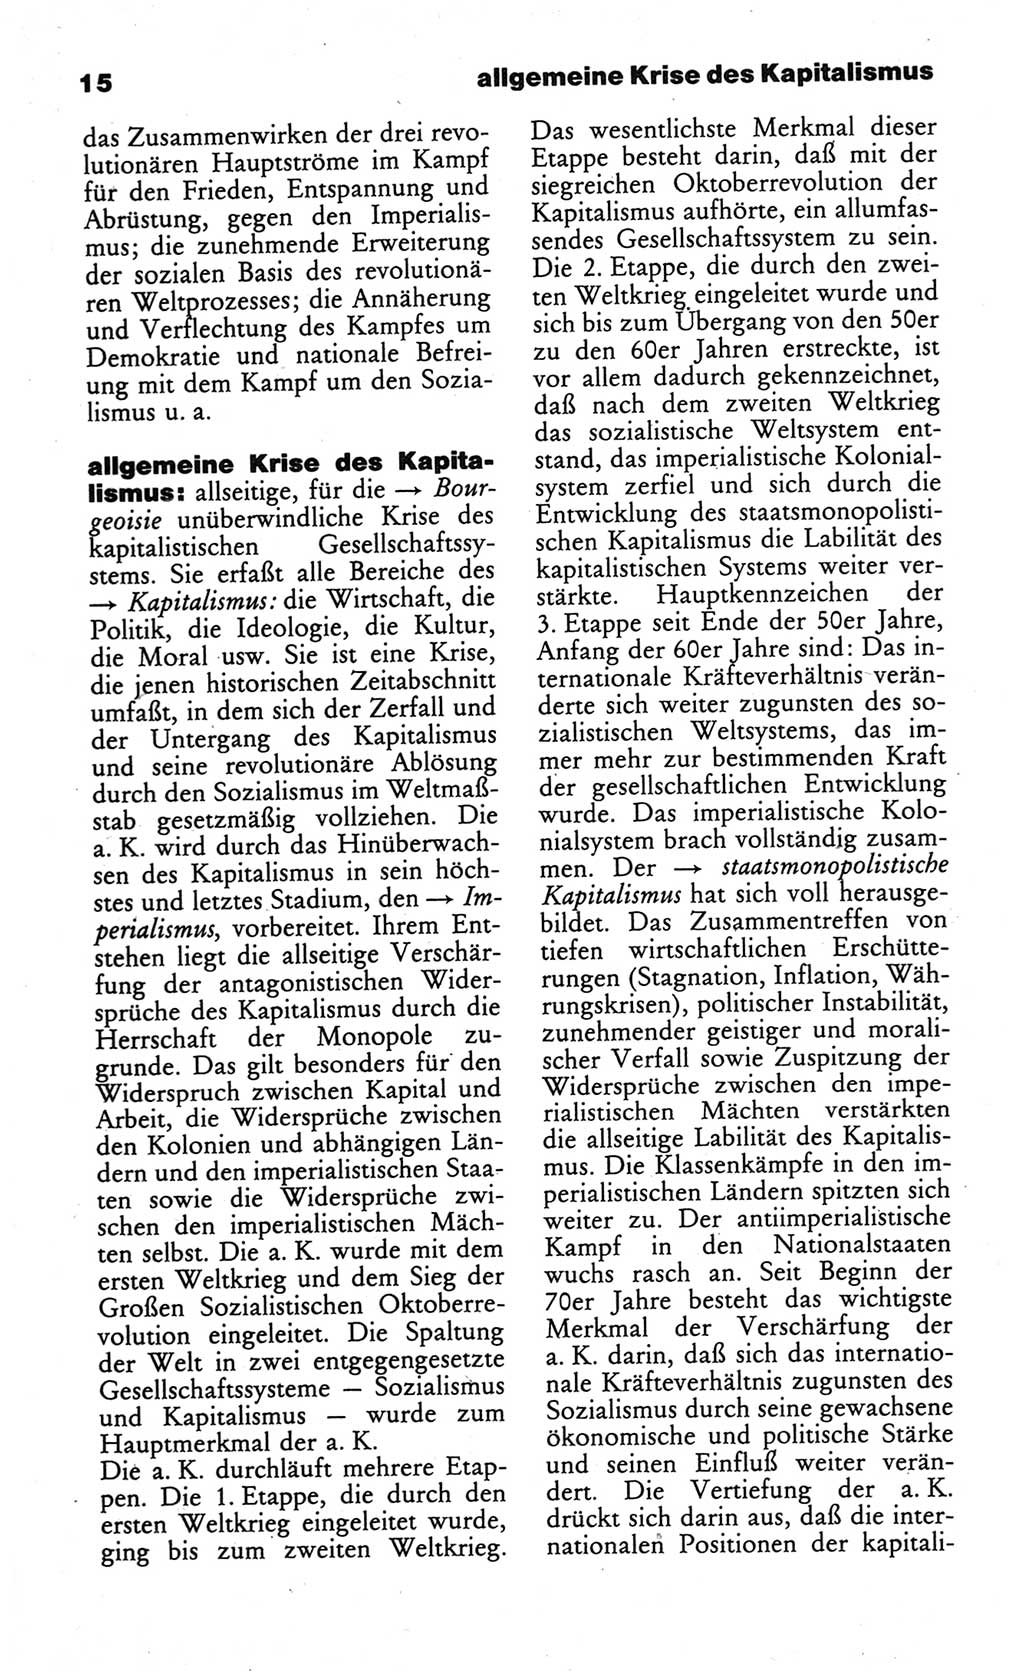 Wörterbuch des wissenschaftlichen Kommunismus [Deutsche Demokratische Republik (DDR)] 1984, Seite 15 (Wb. wiss. Komm. DDR 1984, S. 15)